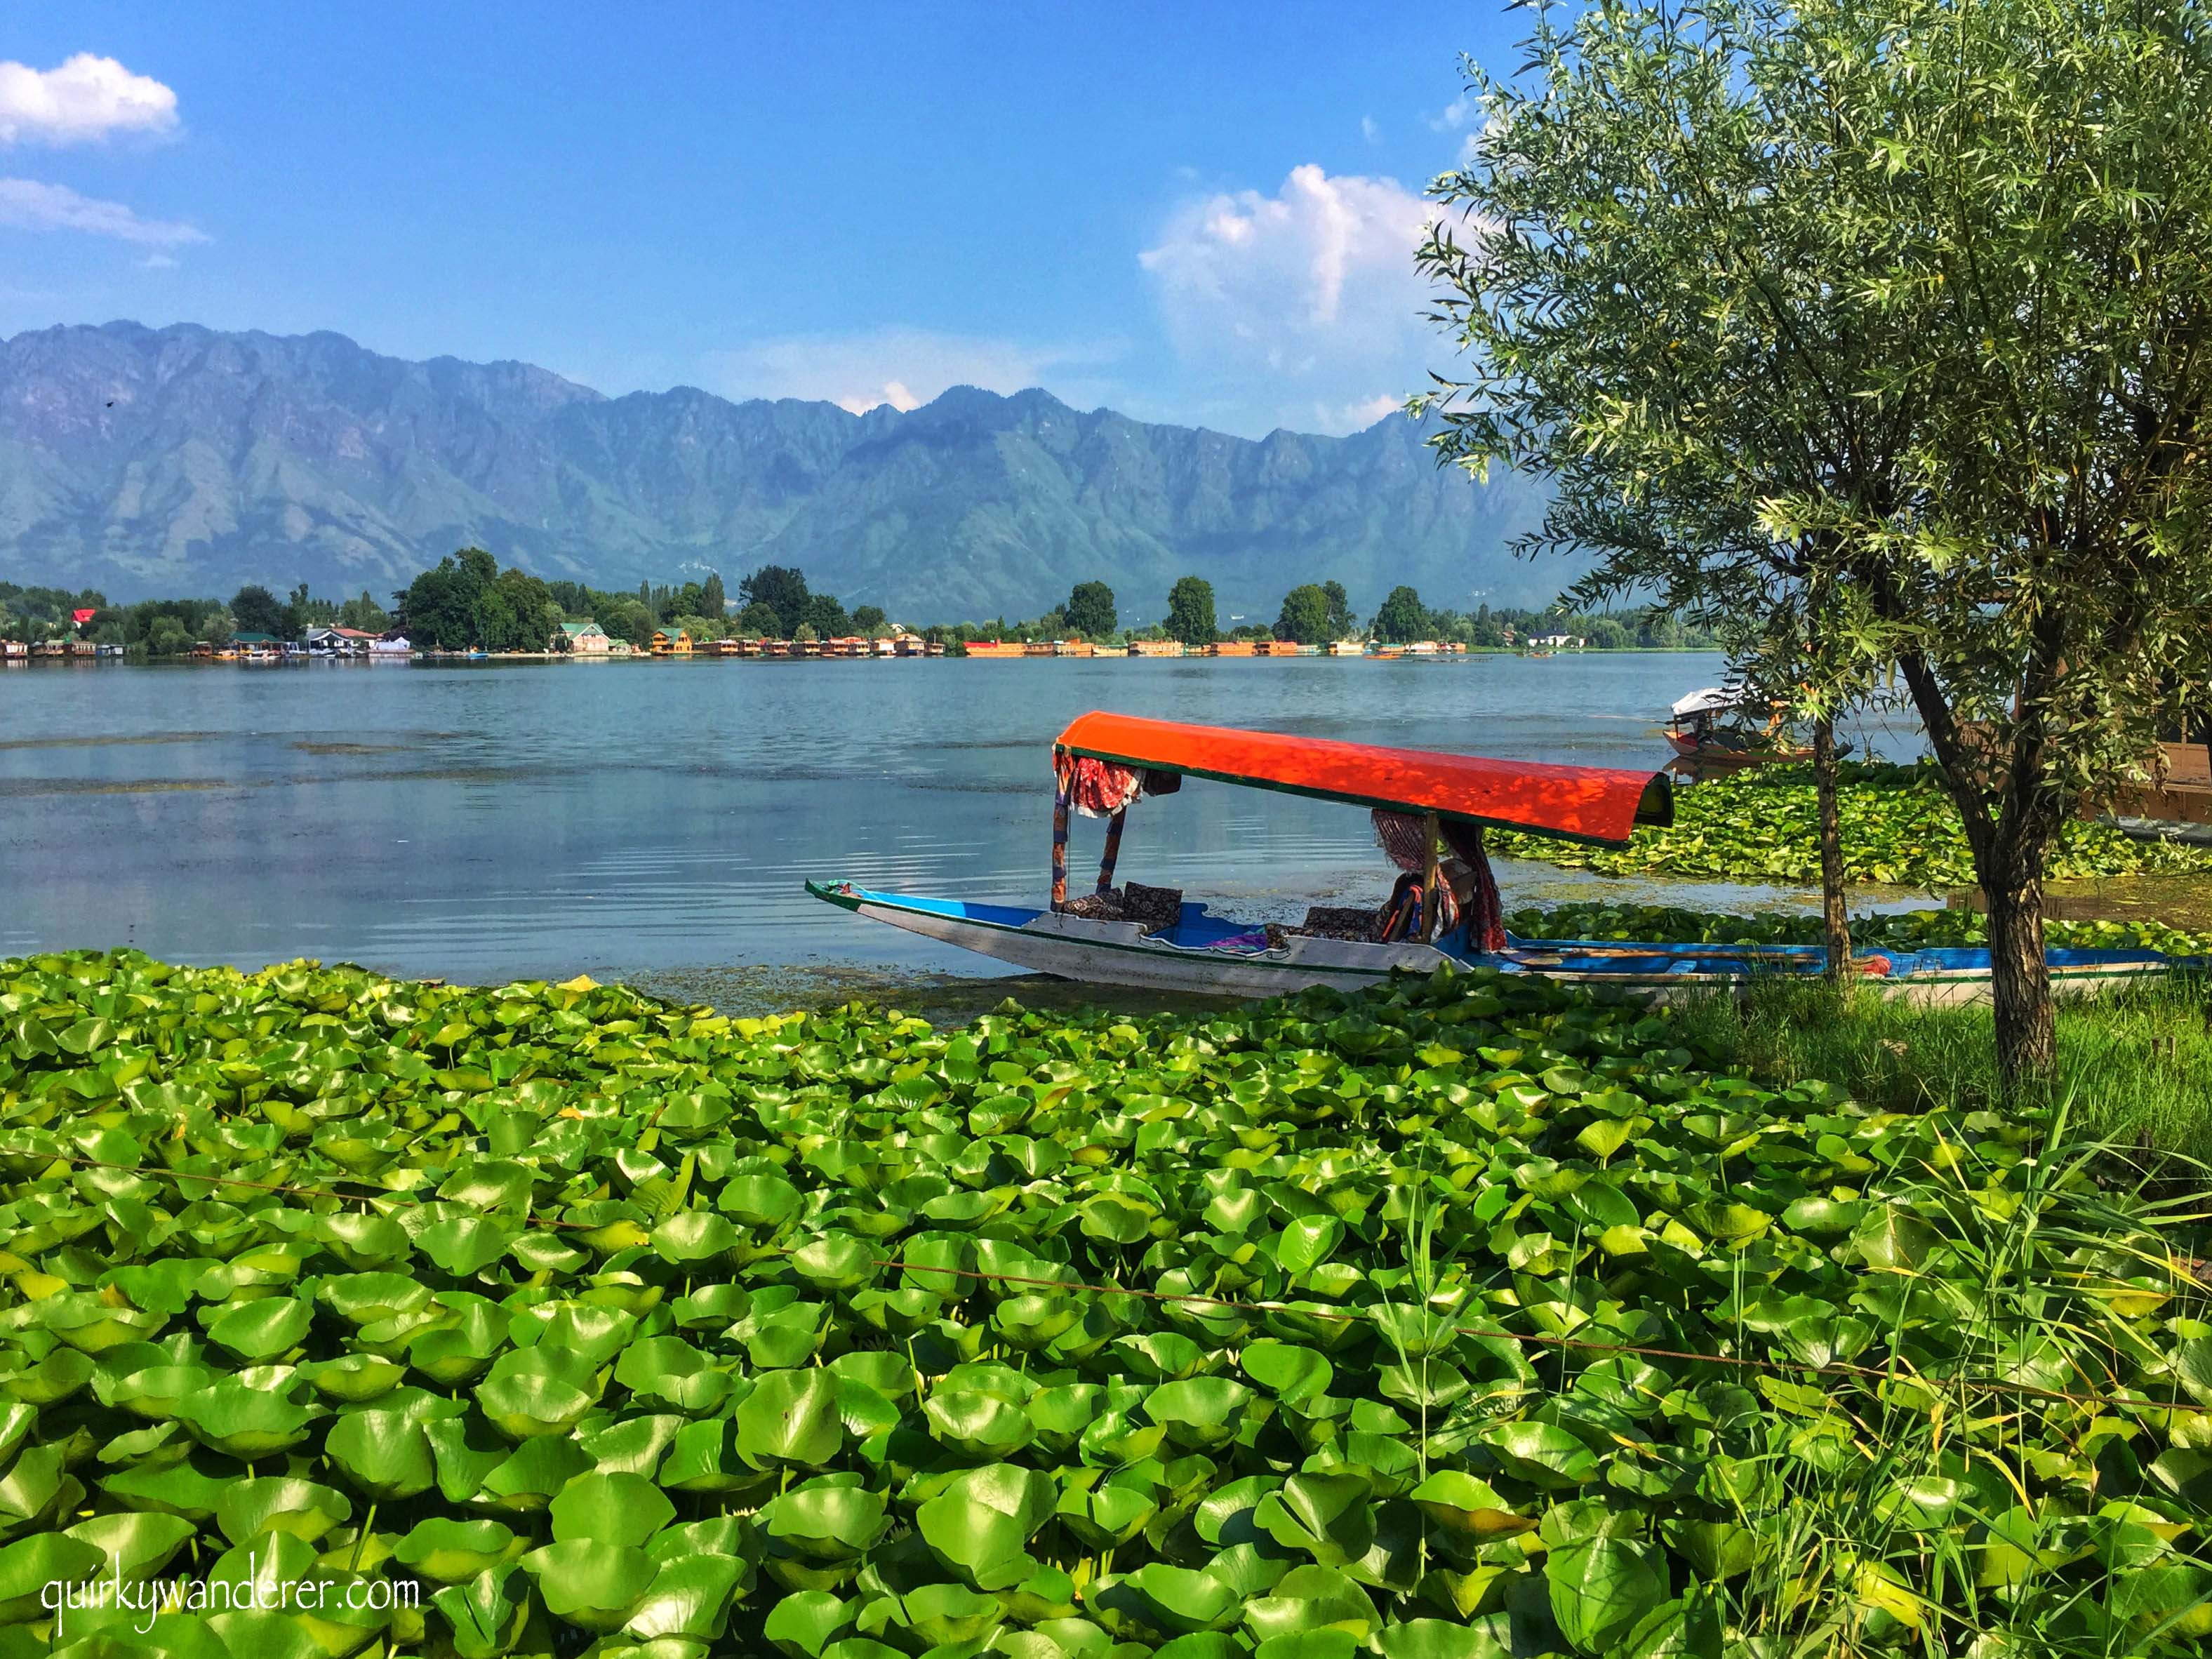 Nigeen lake in Srinagar